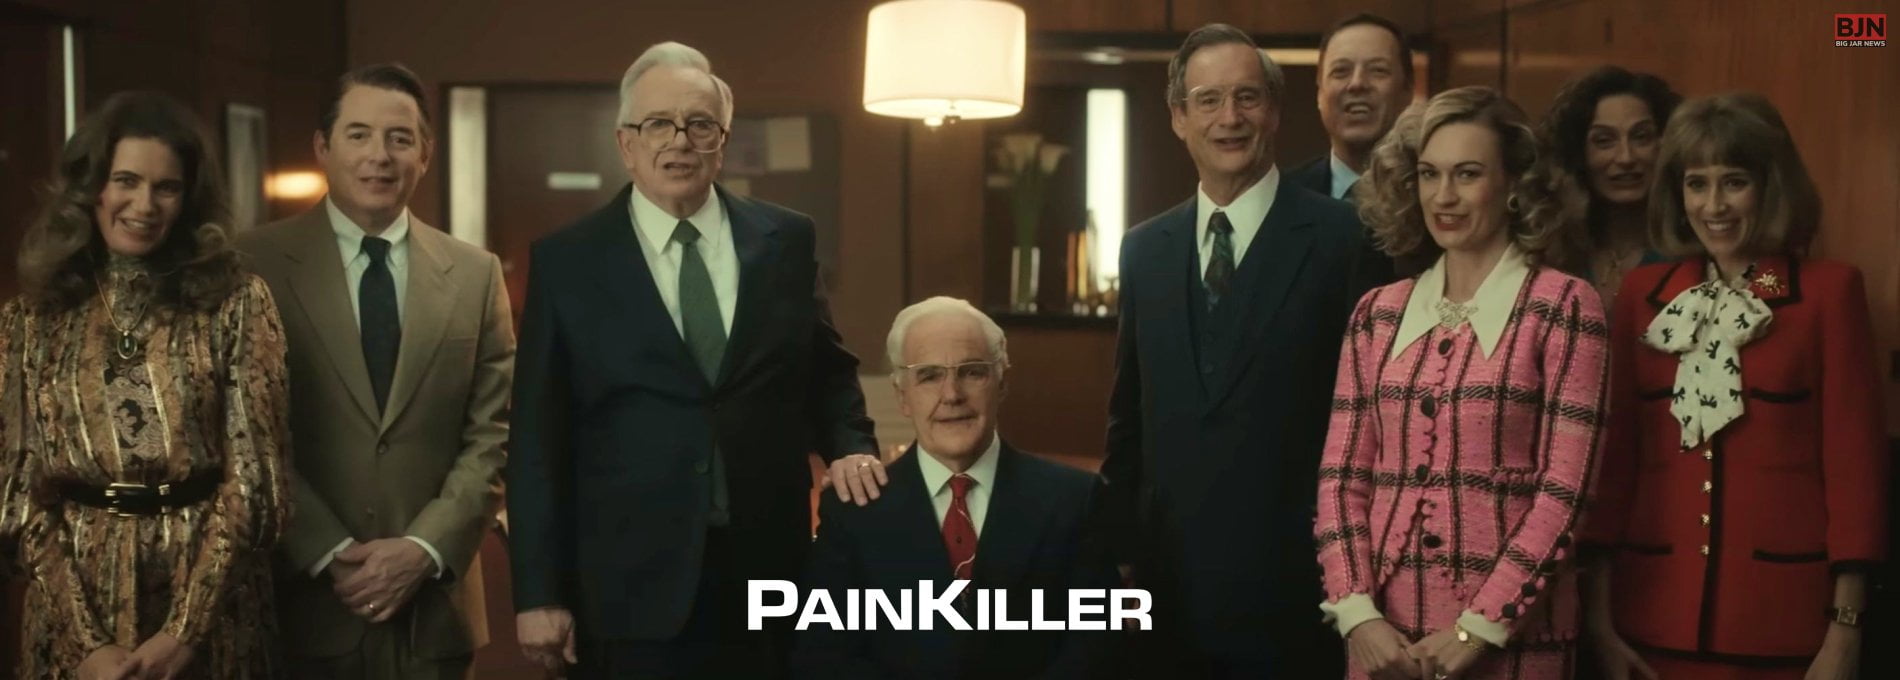 Netflix Painkiller